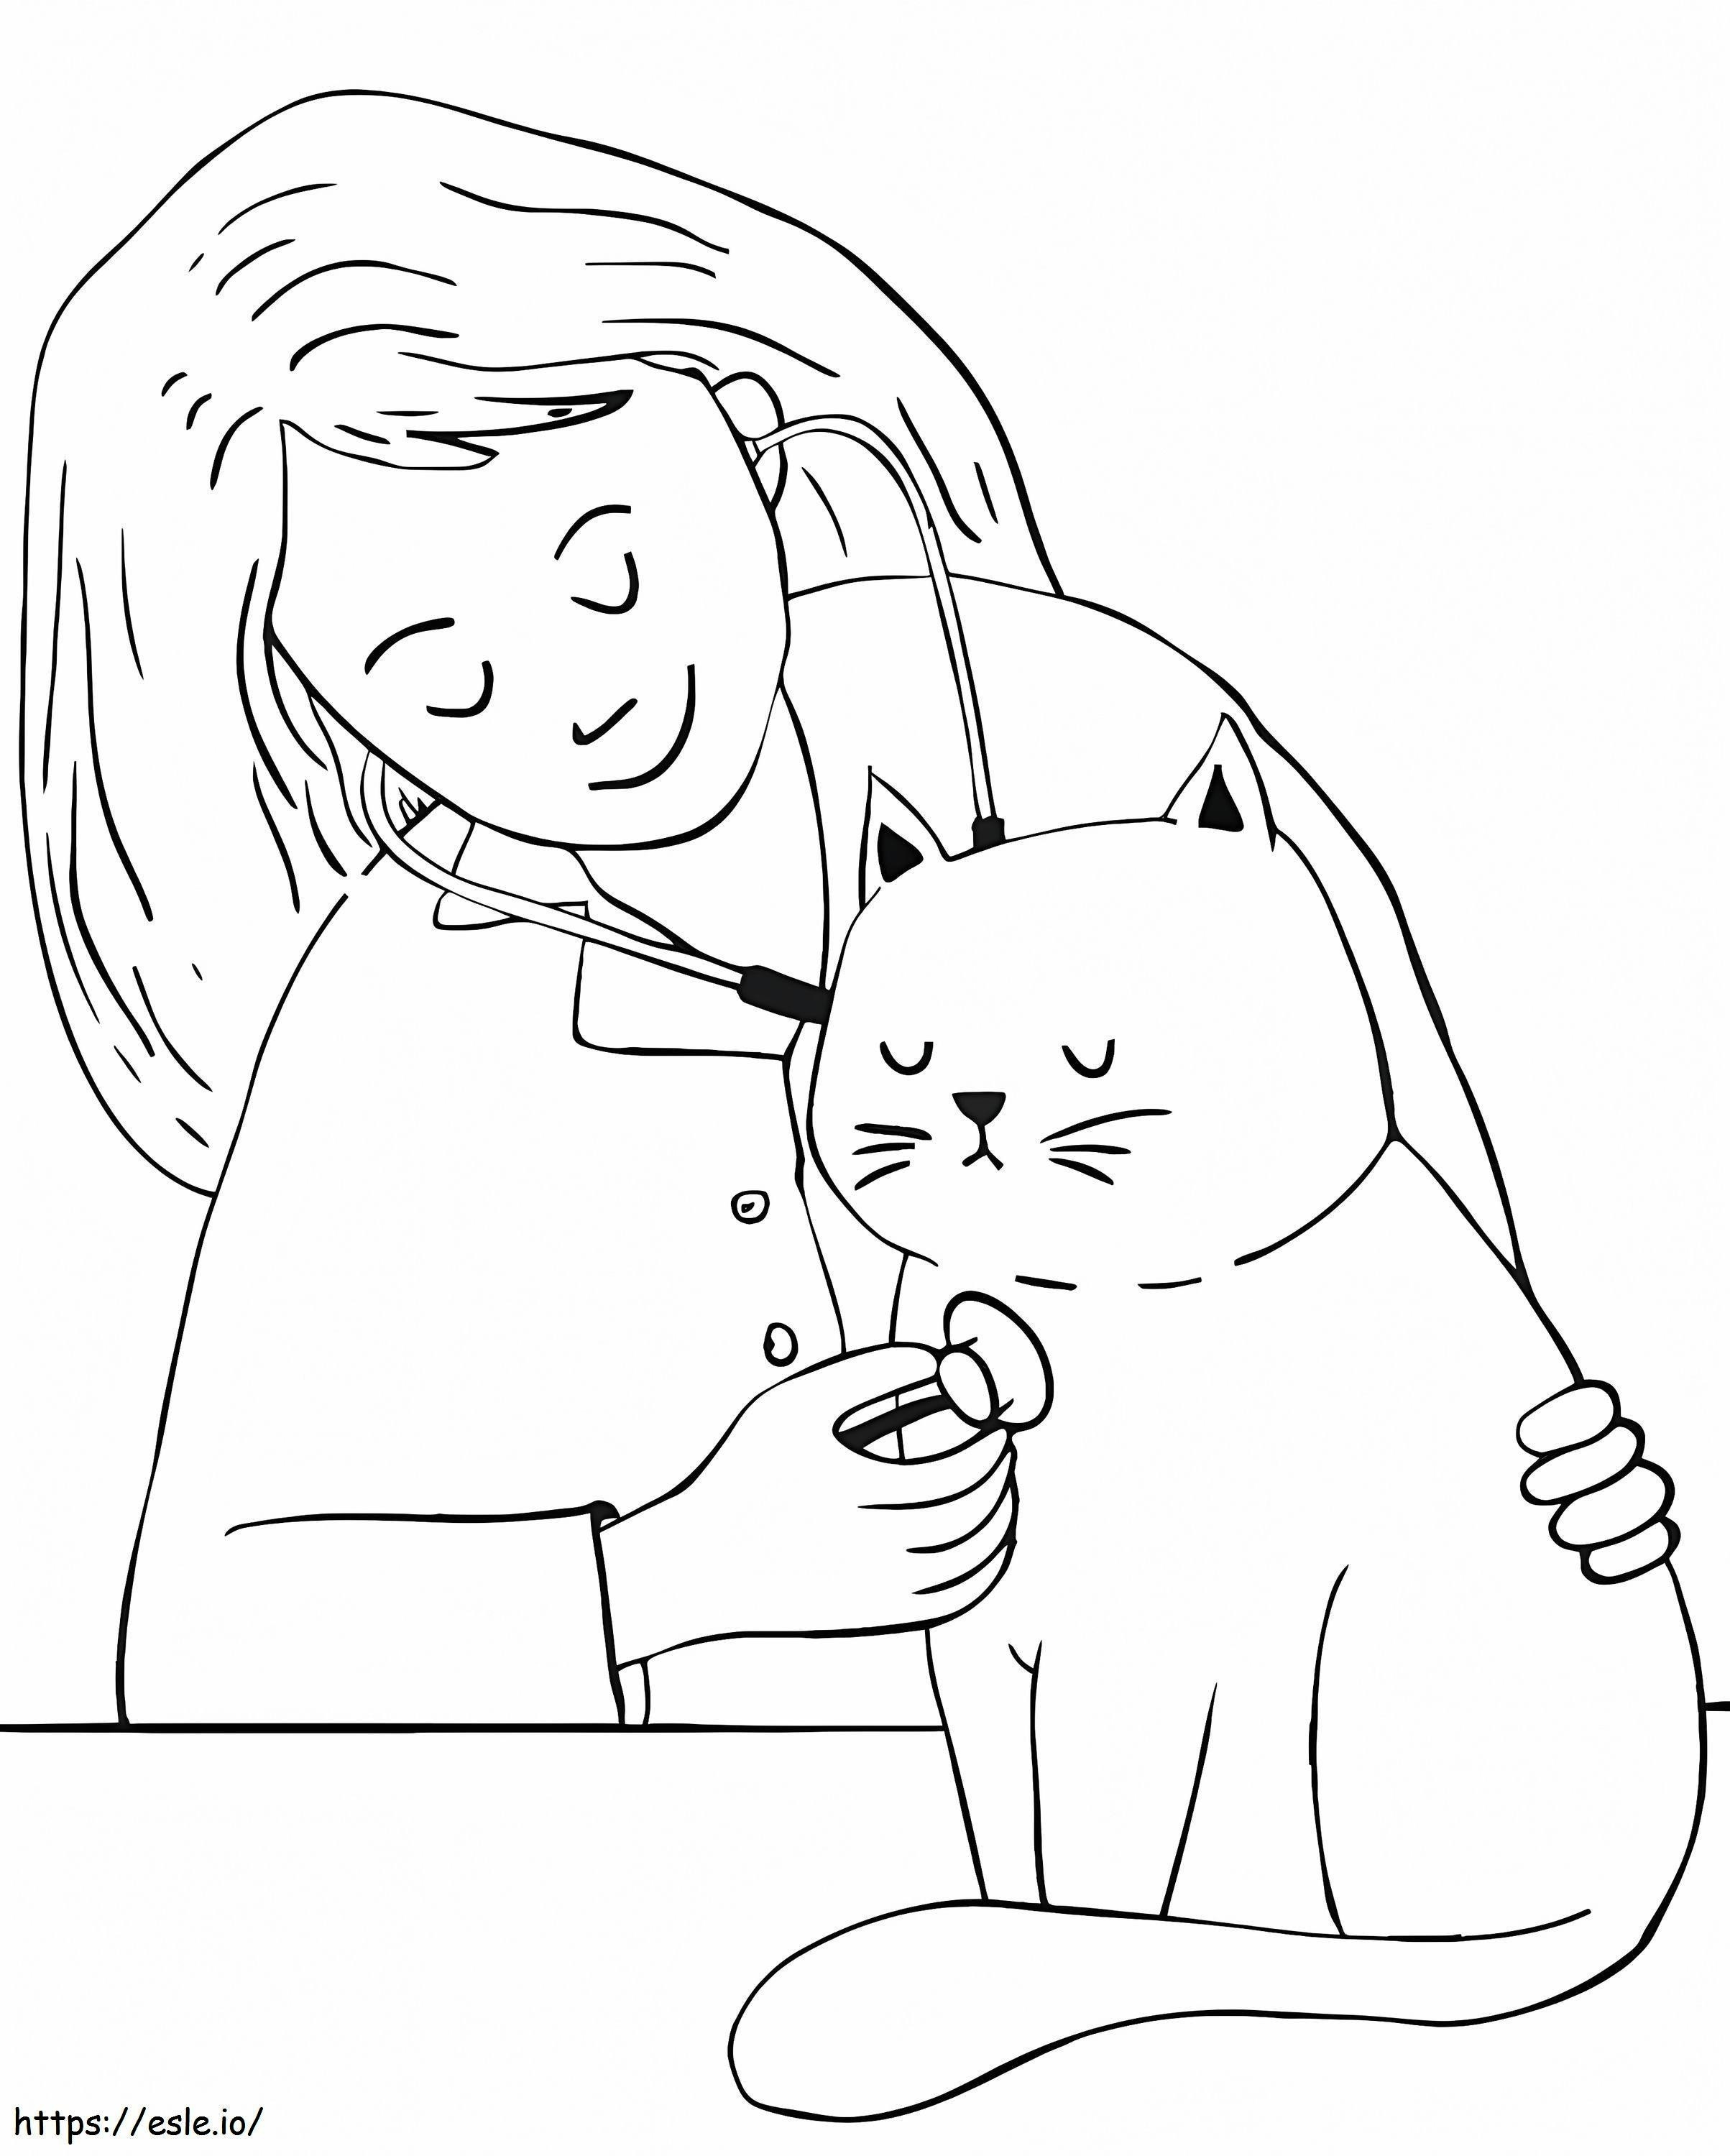 Tierarzt und eine Katze ausmalbilder